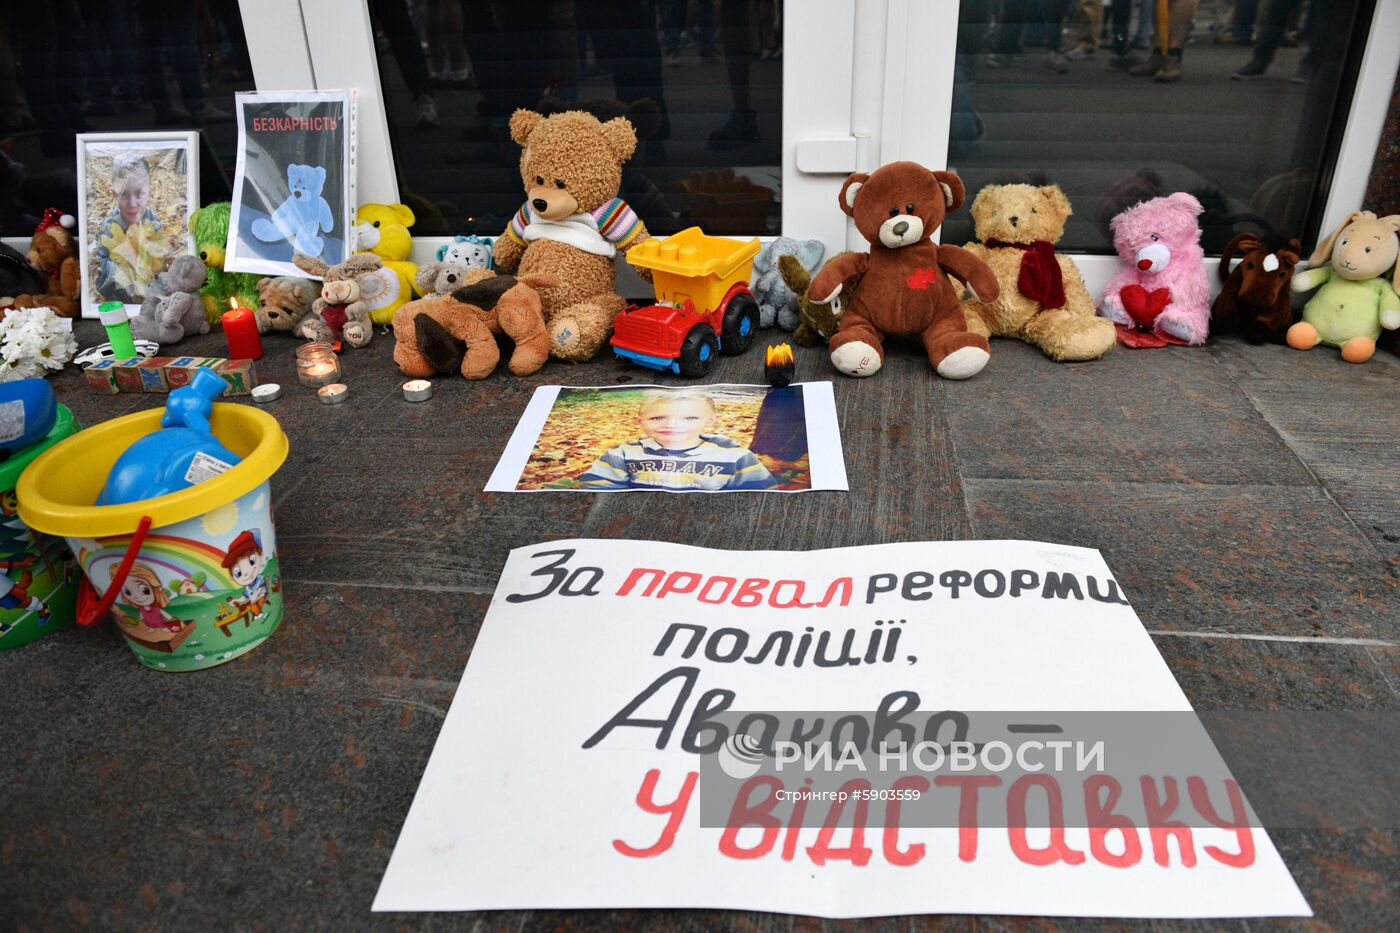 Акции памяти по погибшему мальчику от произвола полиции на Украине